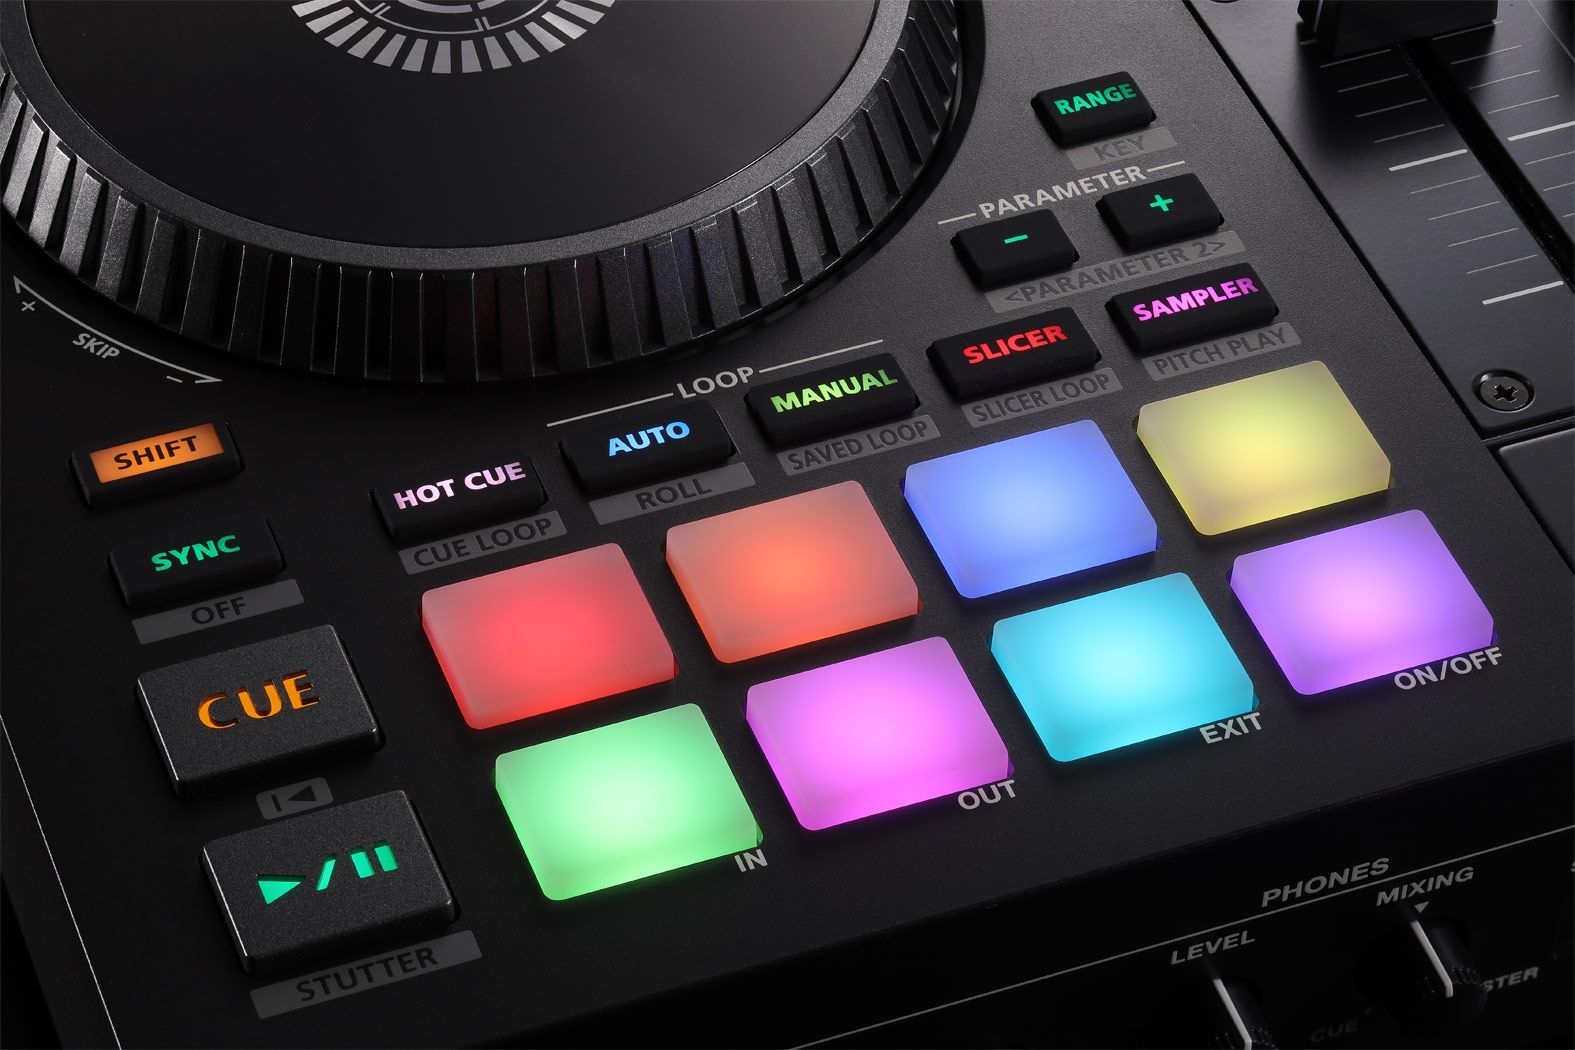 Roland DJ-707M  4-Kanal DJ Controller für Serato DJ Pro mit vier Decks